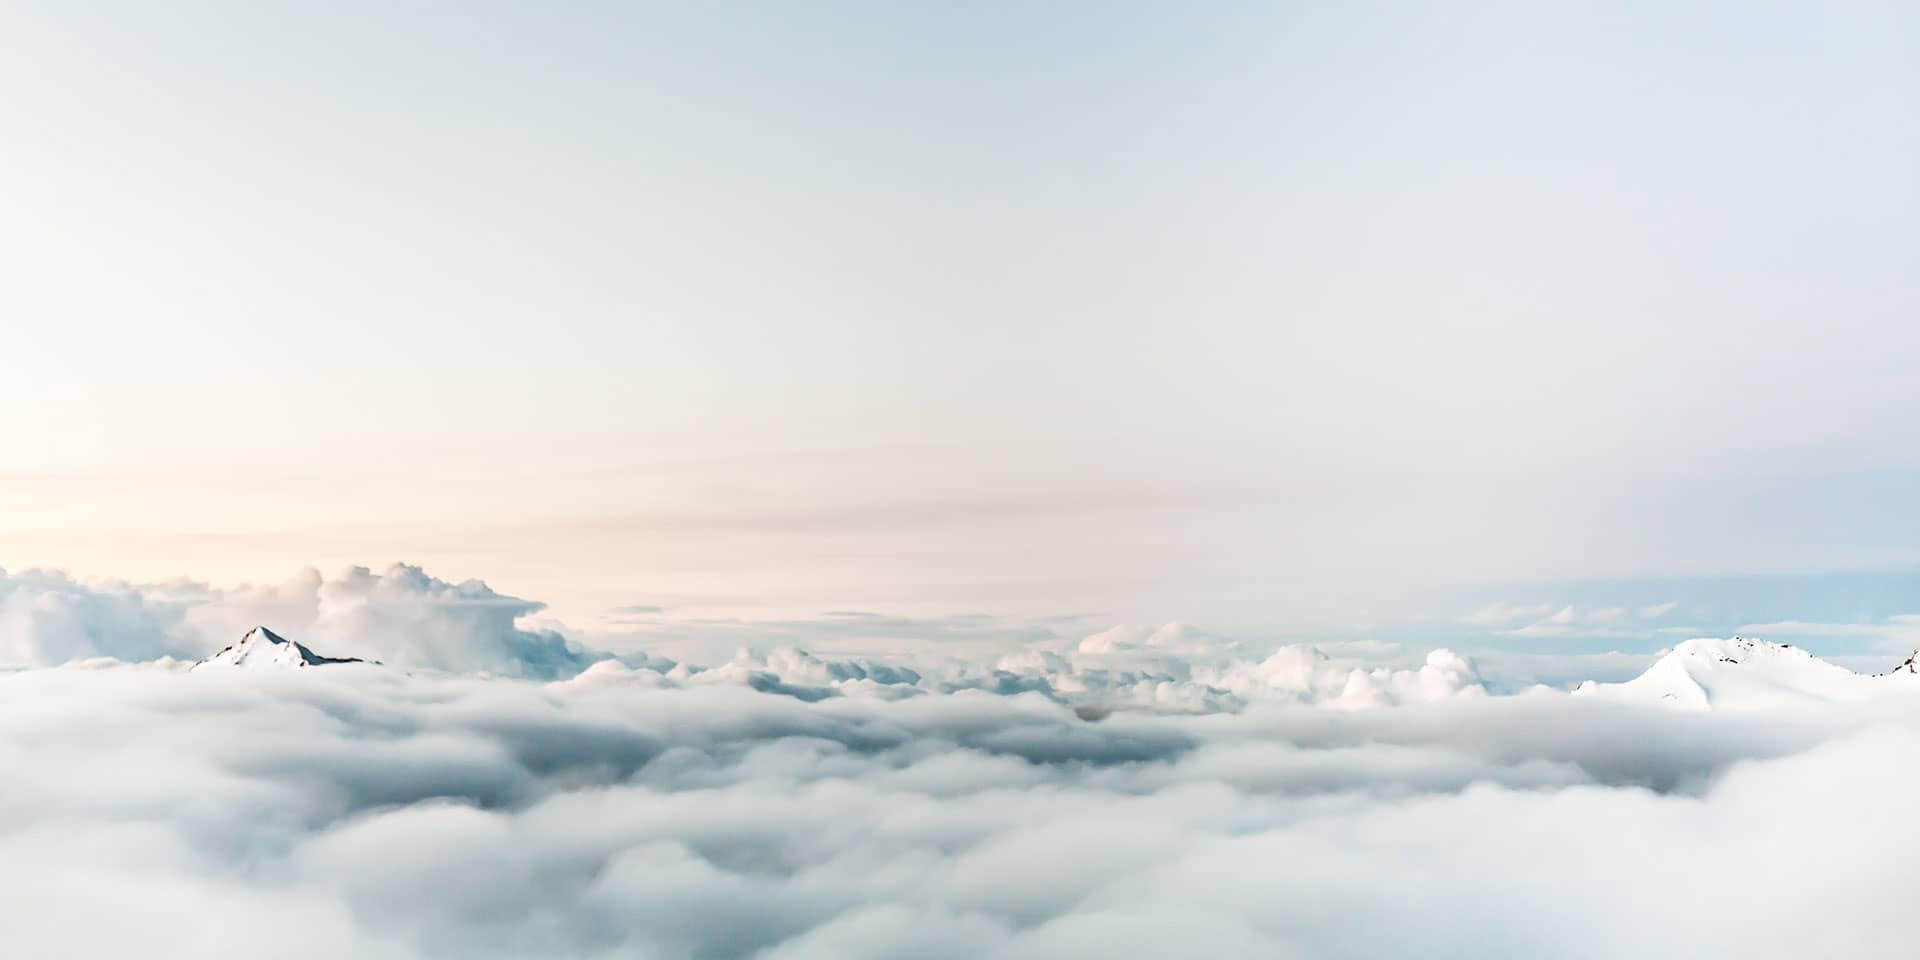 Luftaufnahme über den Wolken mit einer Bergspitze sichtbar bei Sonnenschein